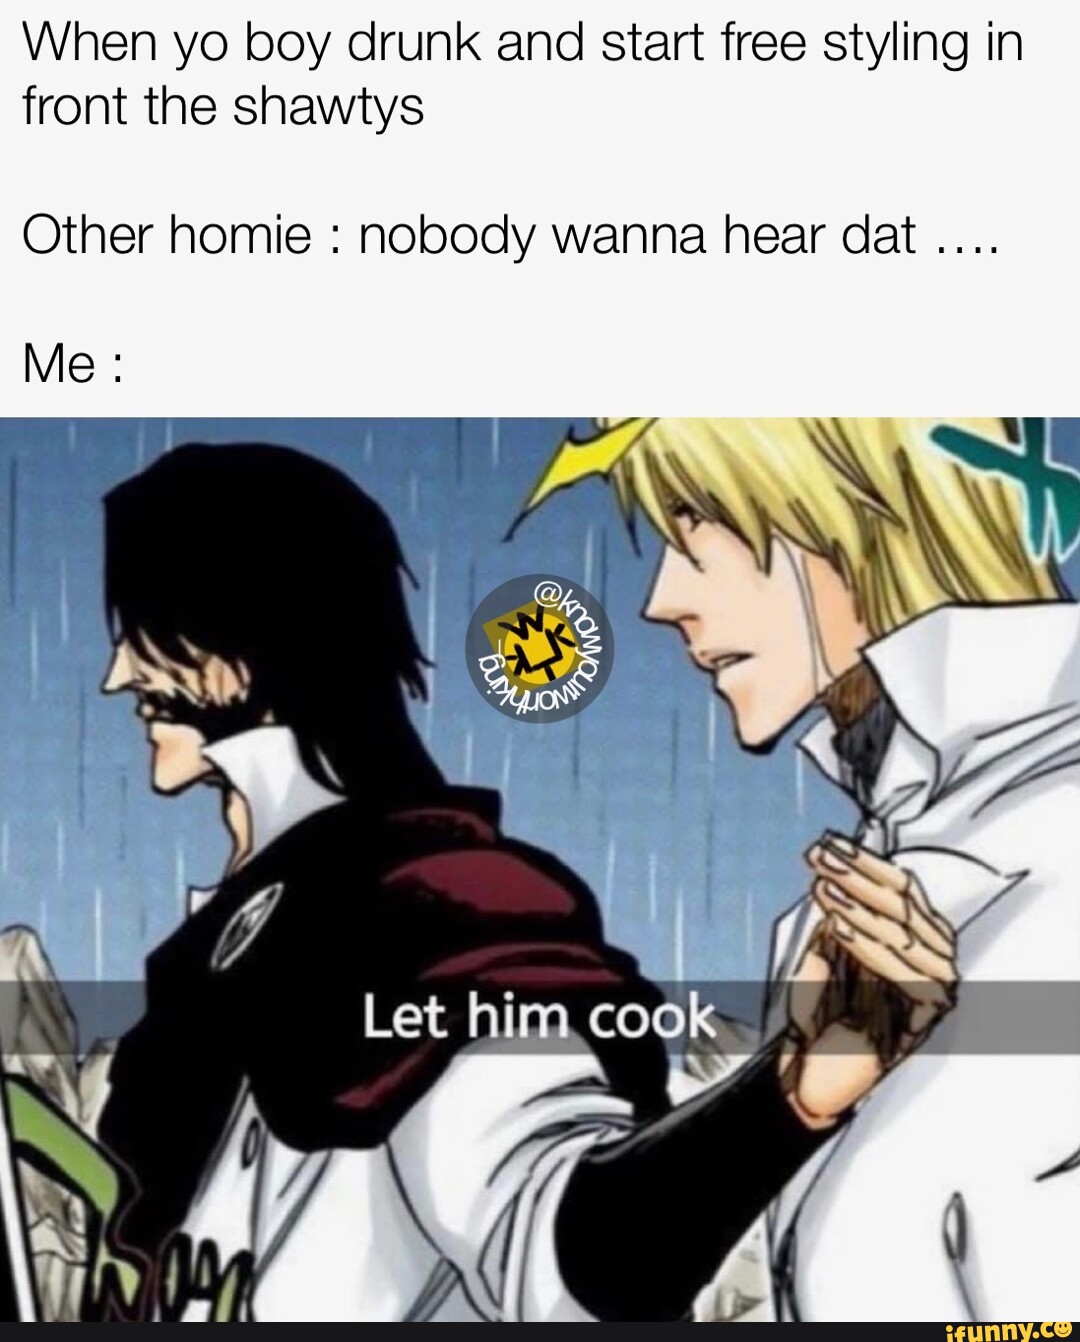 Let Him Cook meme, Let Him Cook / Let That Boy Cook